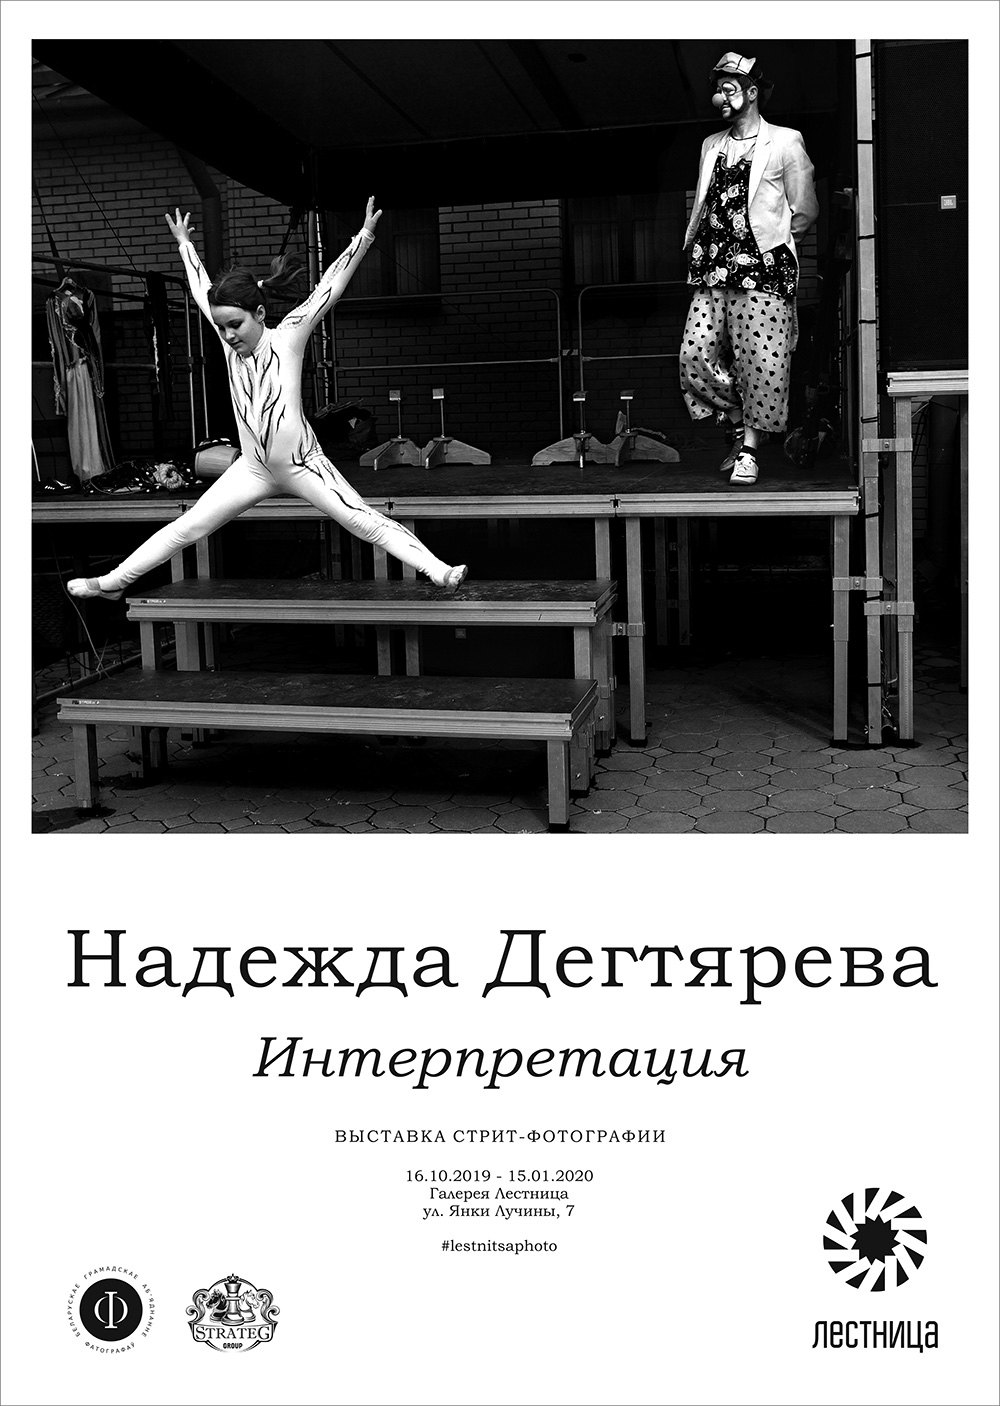 Интерпретация – выставка стрит-фотографии Надежды Дегтяревой